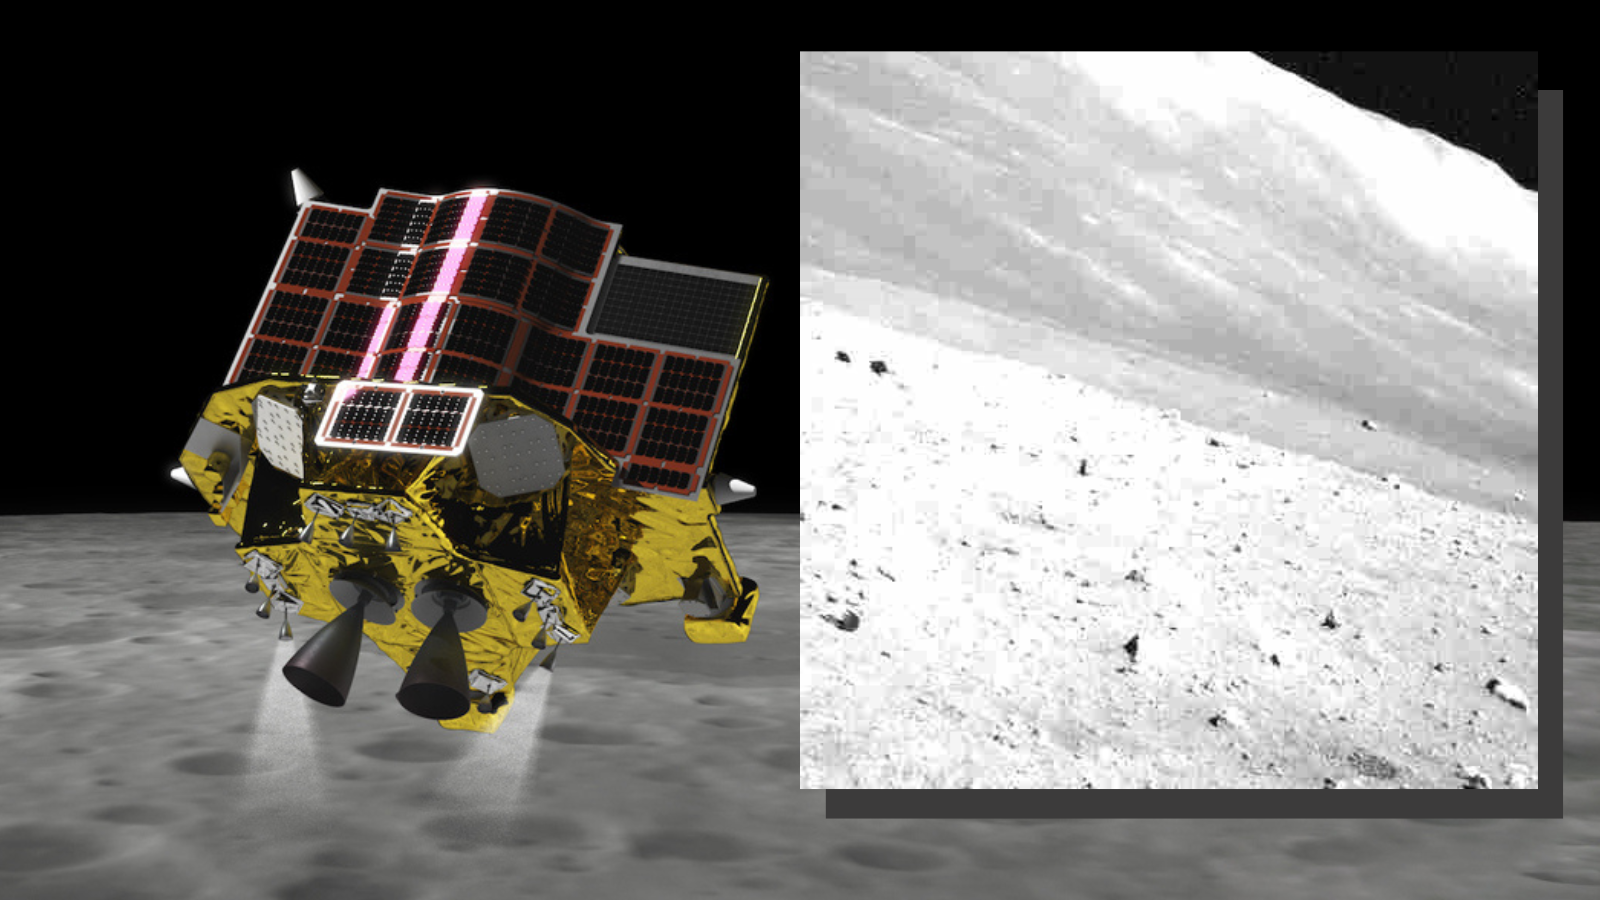 Japan’s SLIM moon lander defies death to survive 3rd frigid lunar night (image)